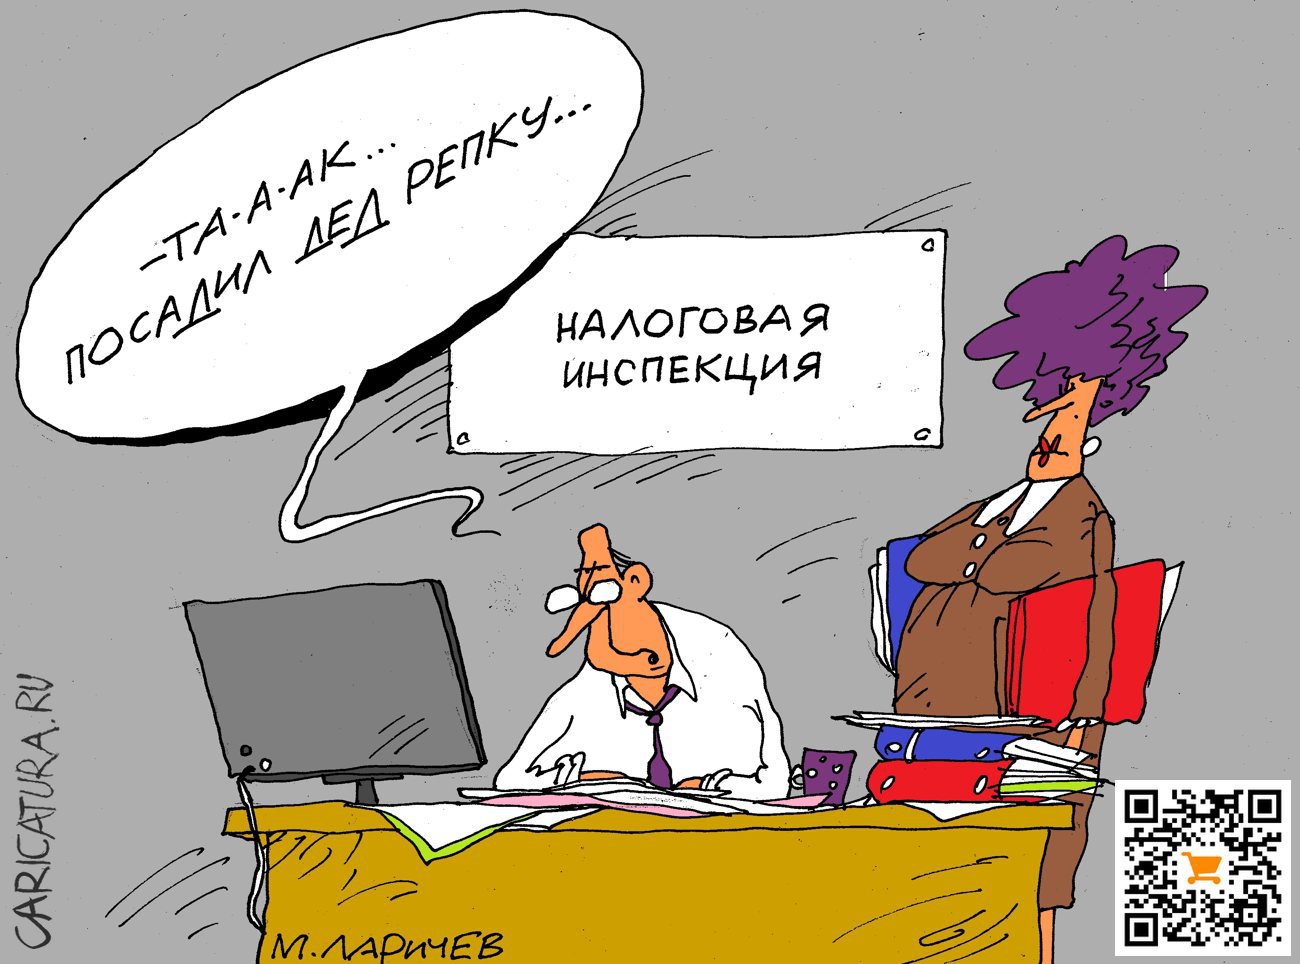 Карикатура "Репа", Михаил Ларичев